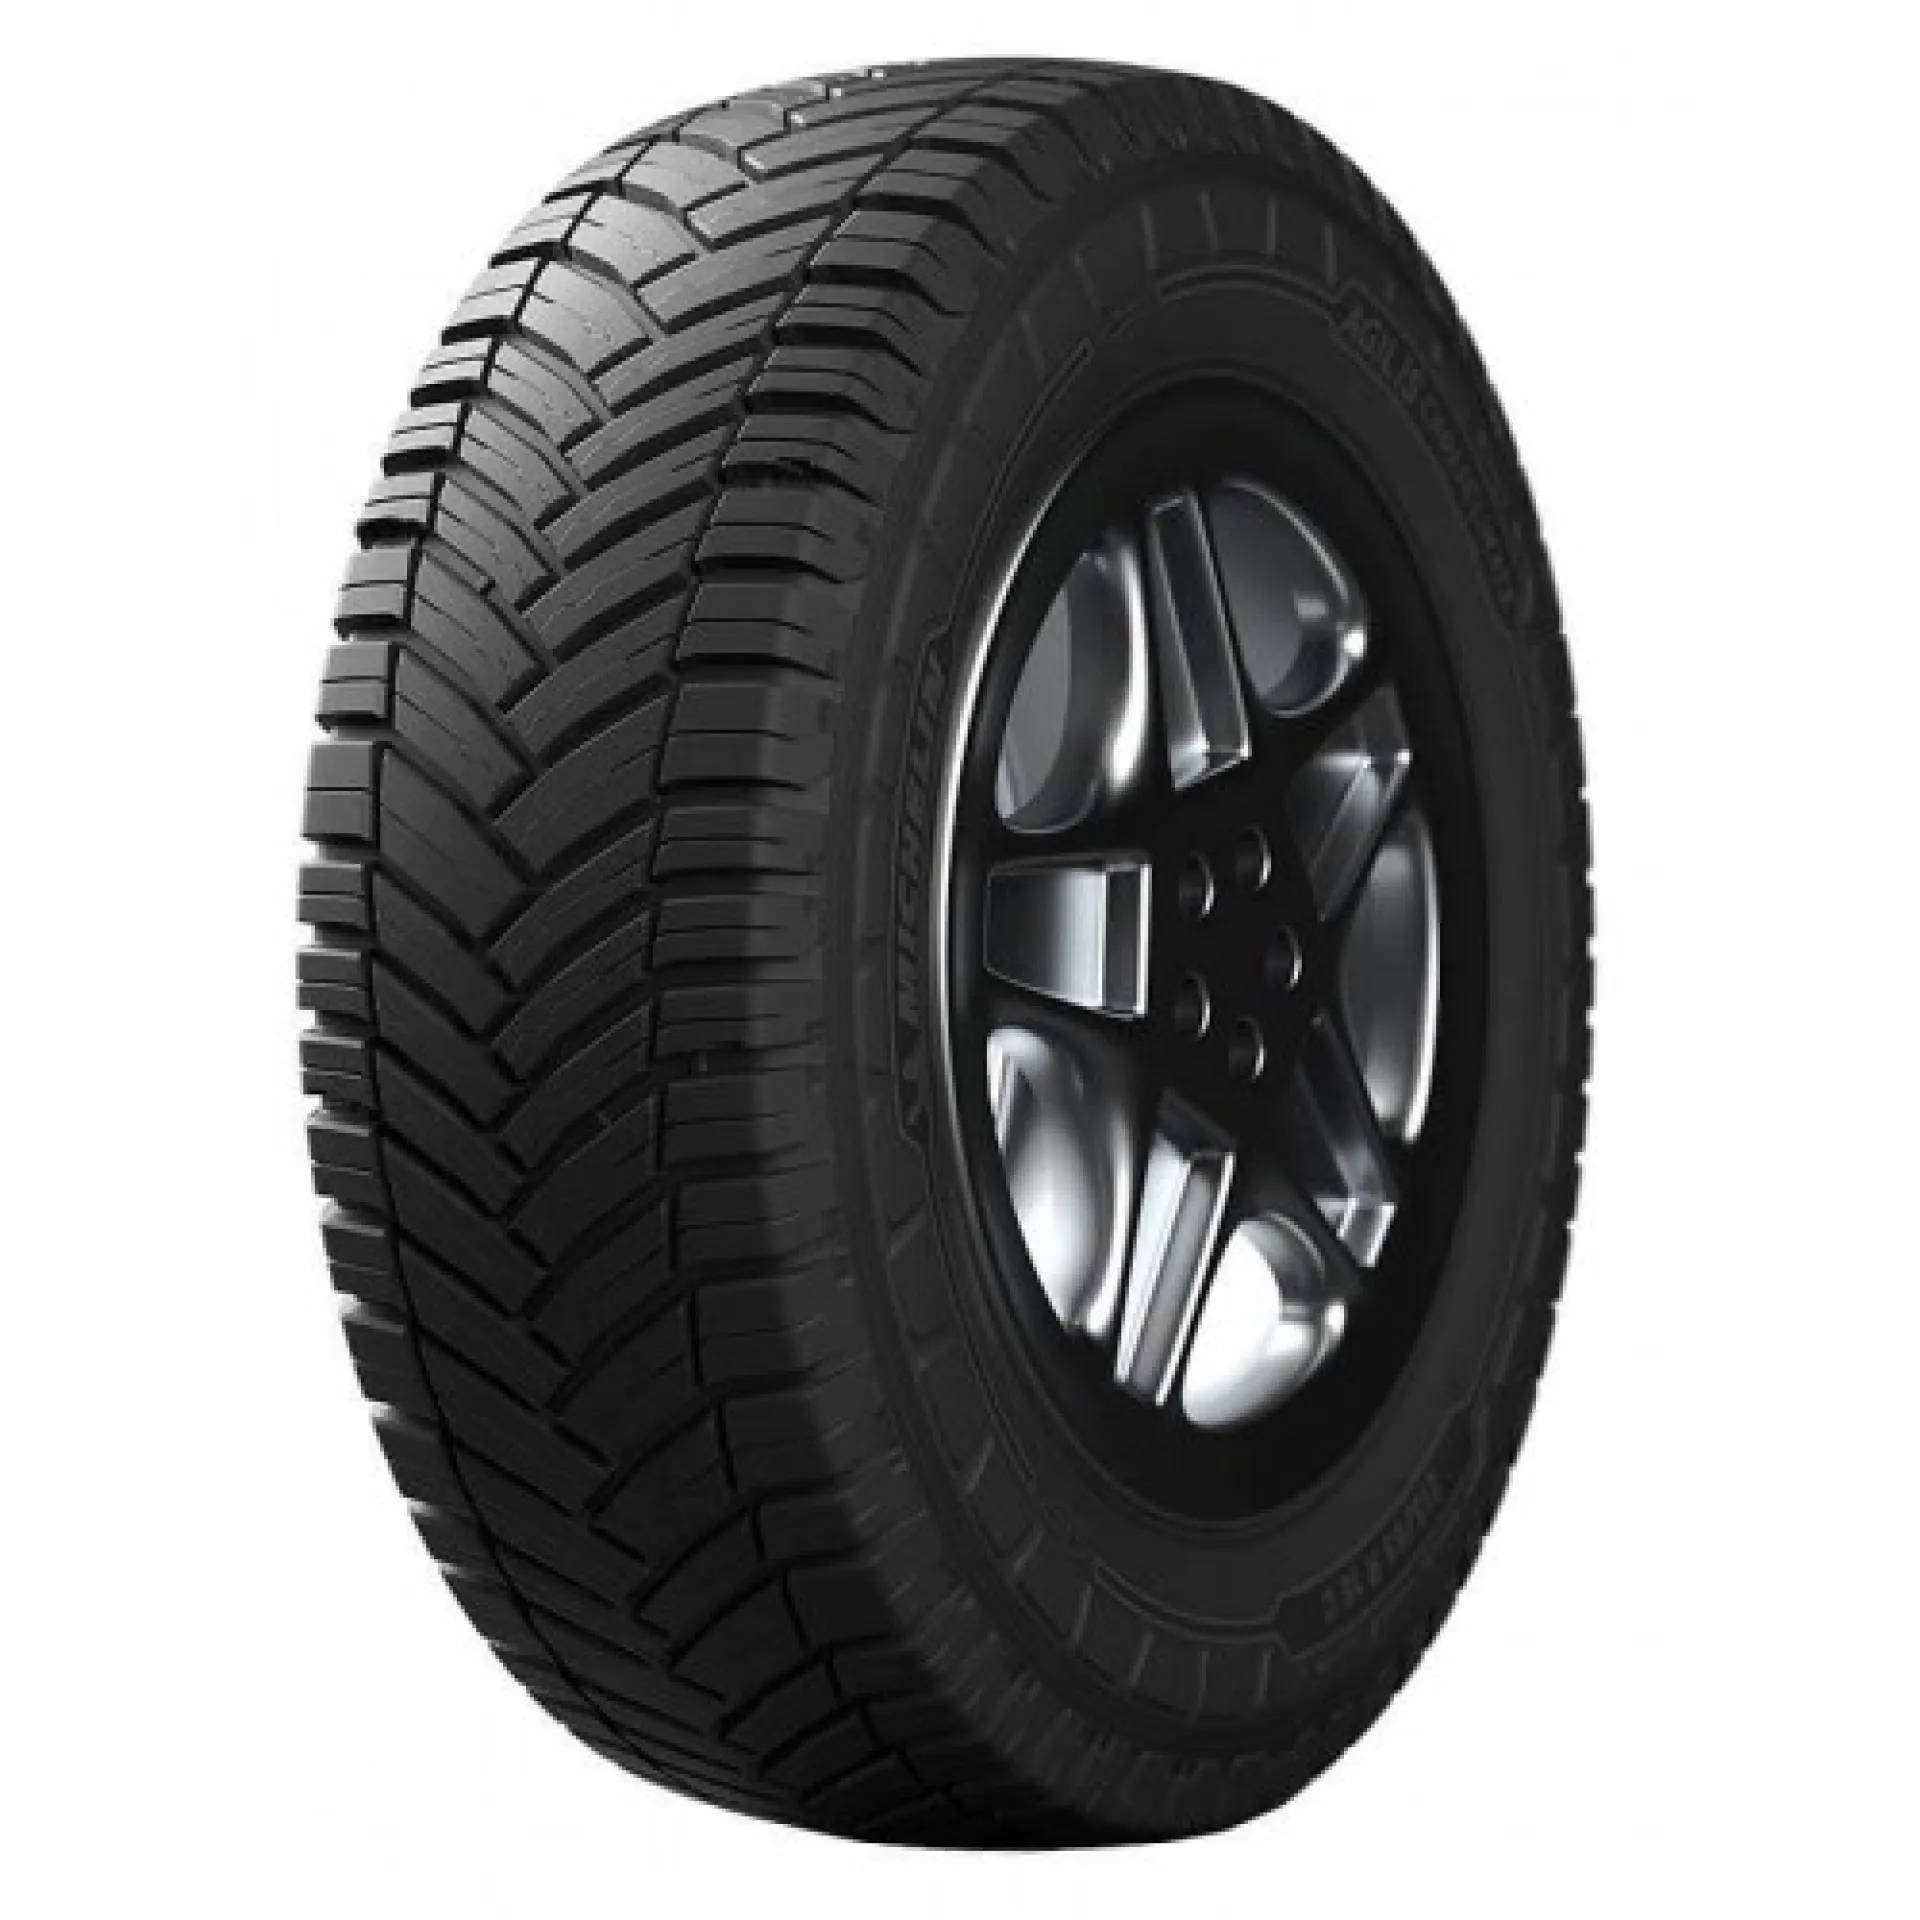 Jauge de profondeur pneu – Fit Super-Humain